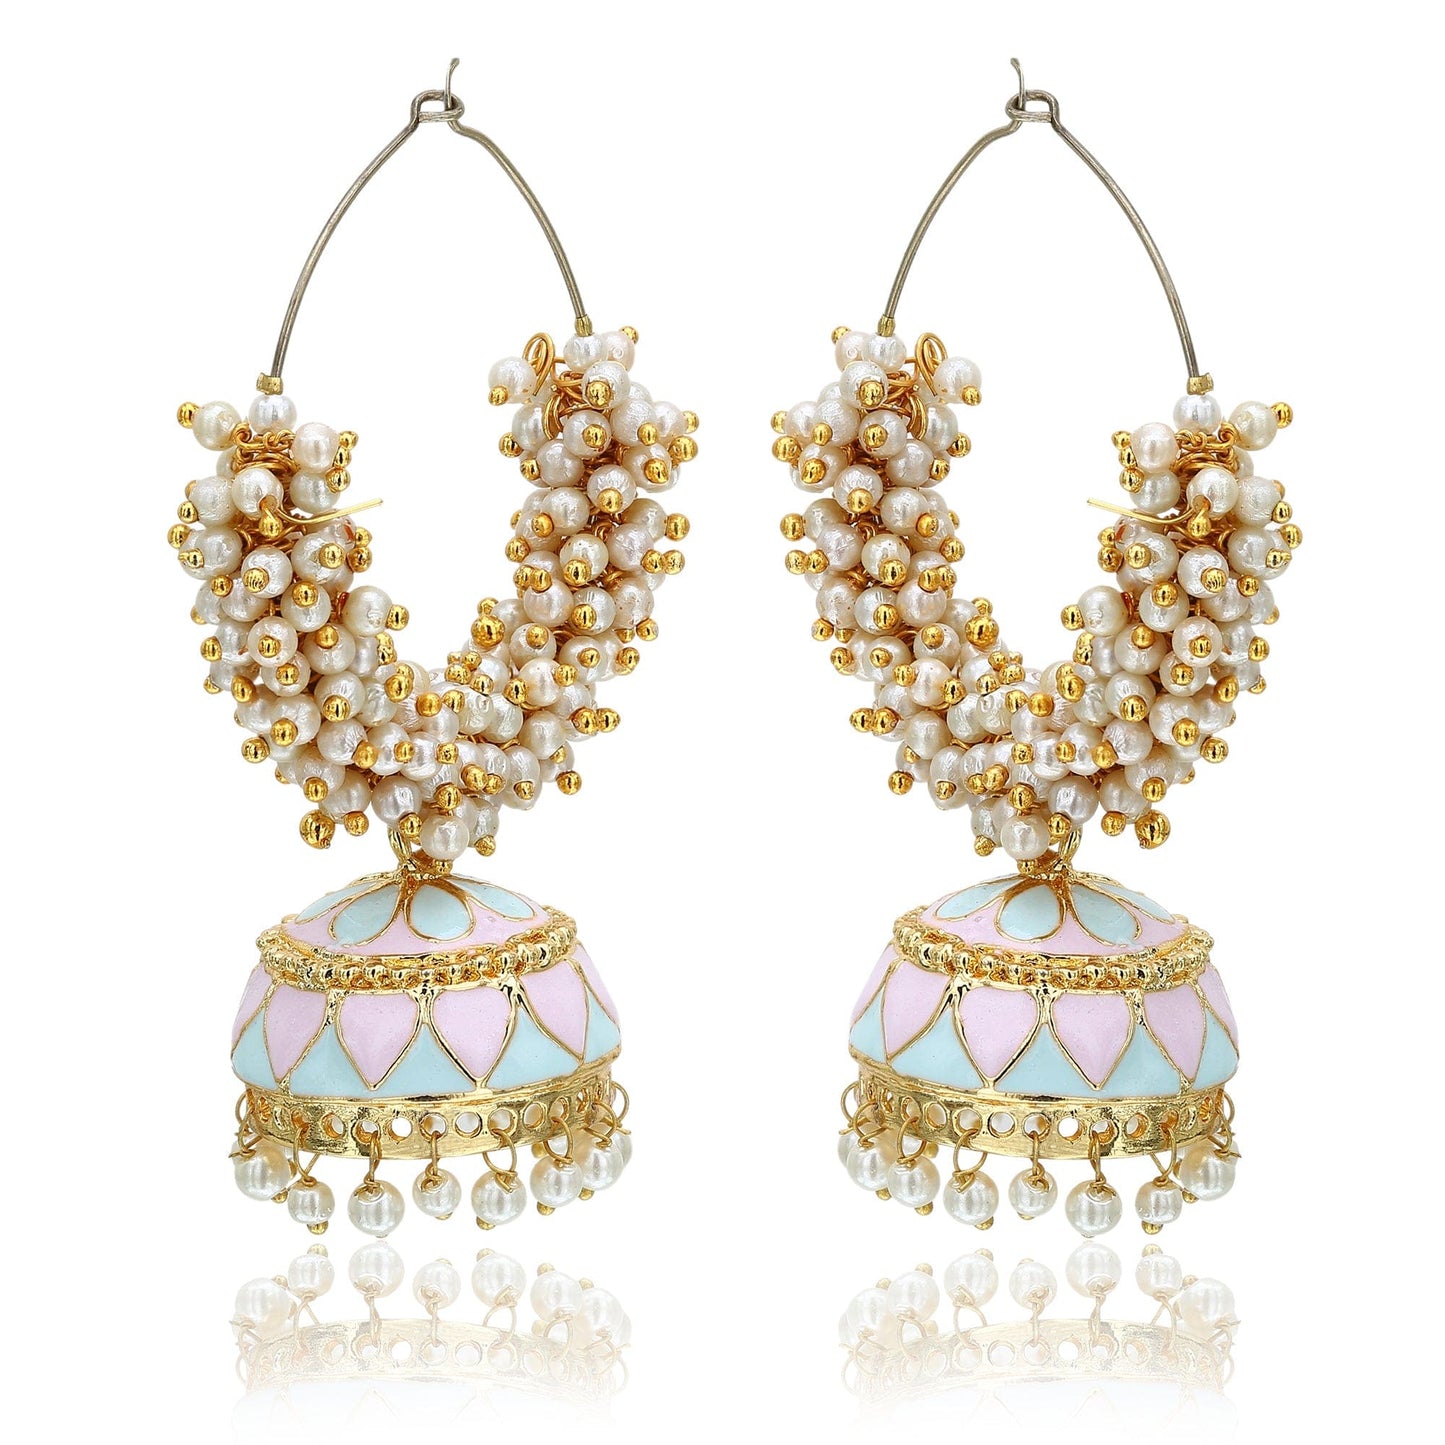 Moonstruck Gold Pearl Hoops Fashion Earrings For Women (Pink) - www.MoonstruckINC.com